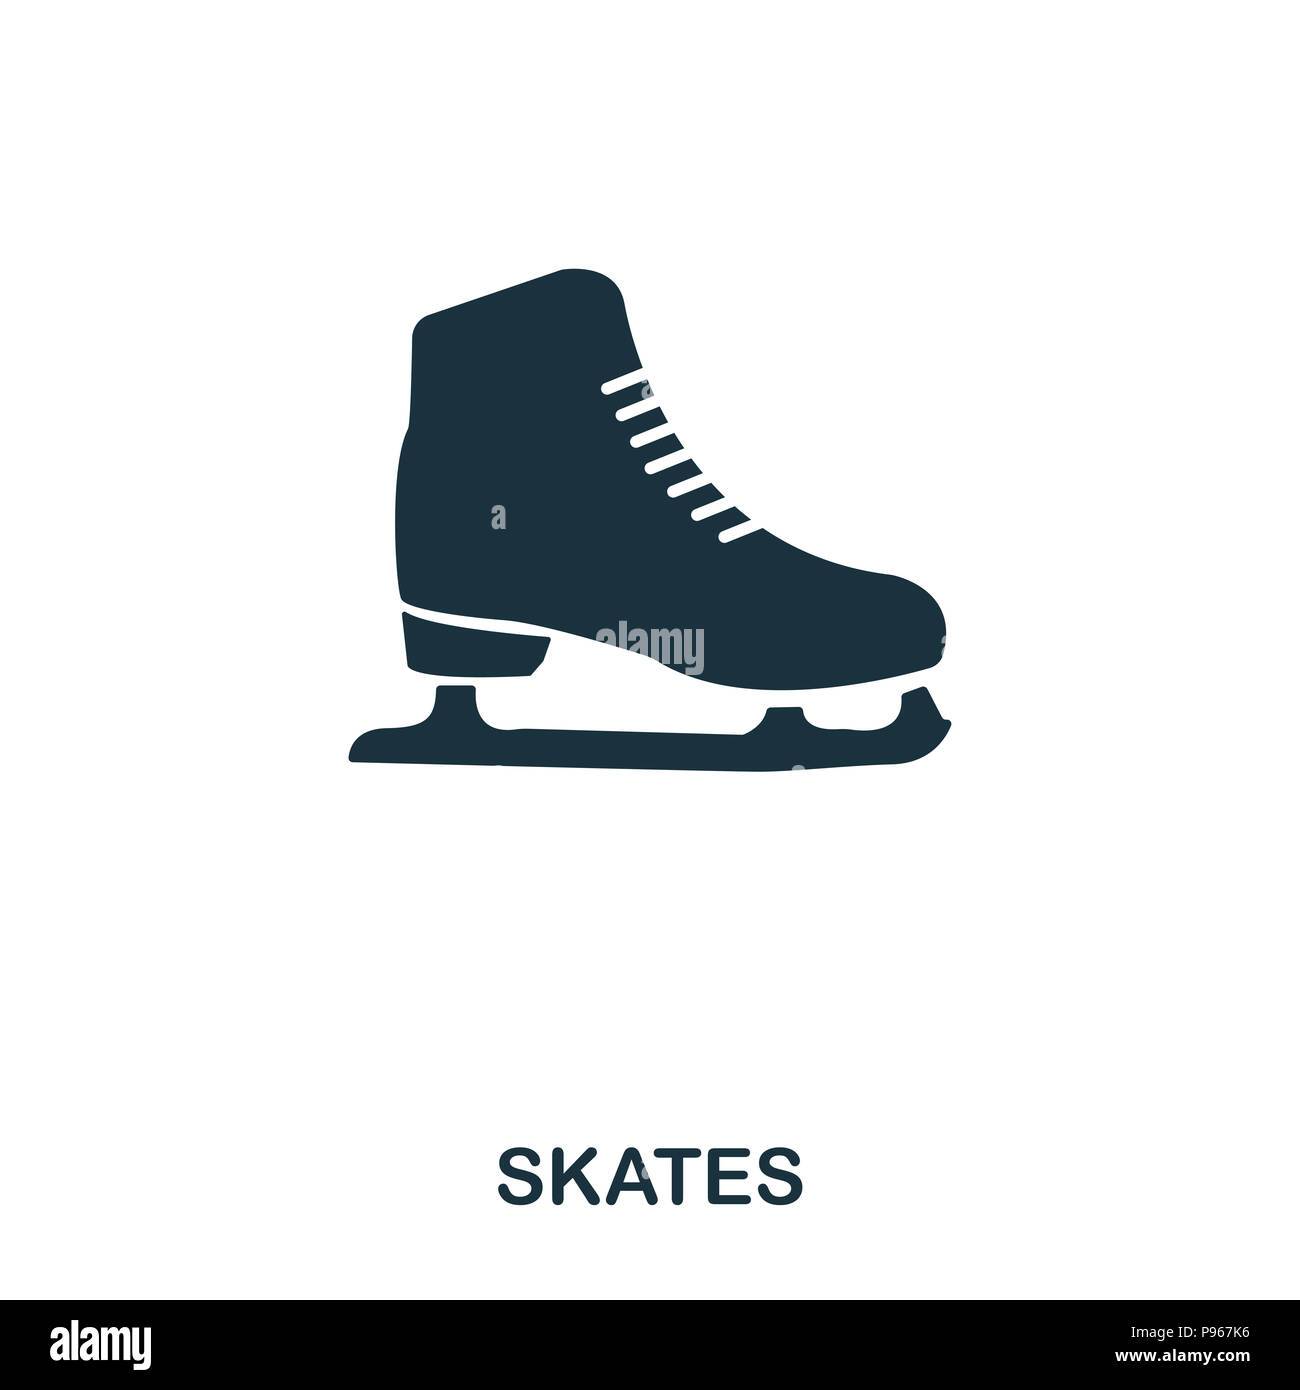 Skates icono. El diseño de iconos de estilo Premium. Interfaz de usuario. Ilustración de Skates icono. Pictograma aislado en blanco. Listo para usar en diseño web, aplicaciones, software, prin Foto de stock